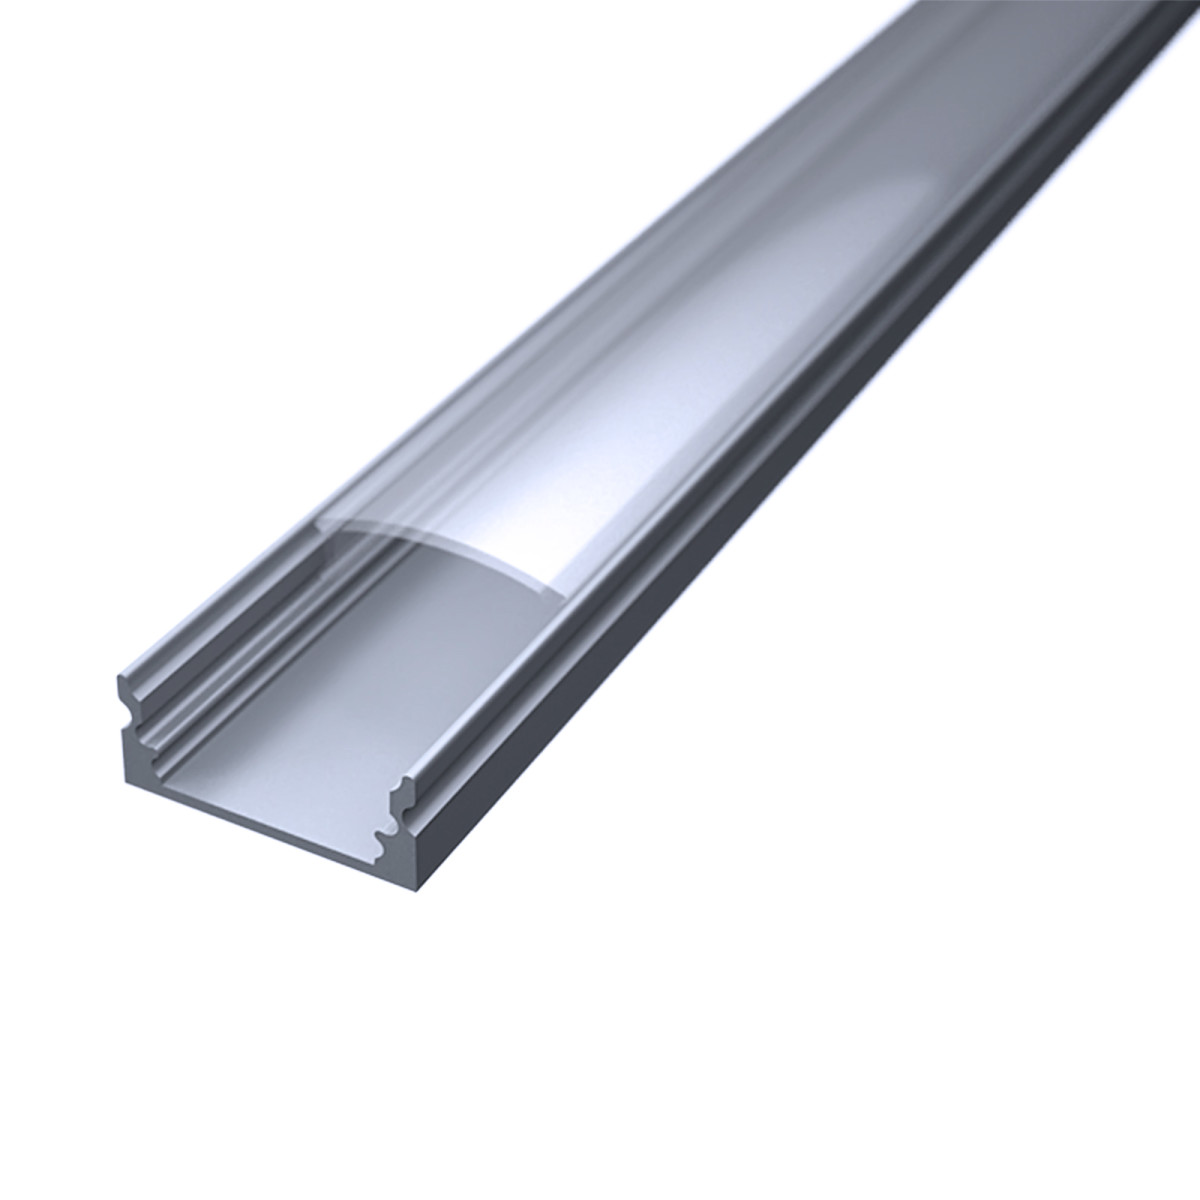 LED Flachprofil "Slim-Line" | Abdeckung transparent | Zuschnitt auf 72cm |